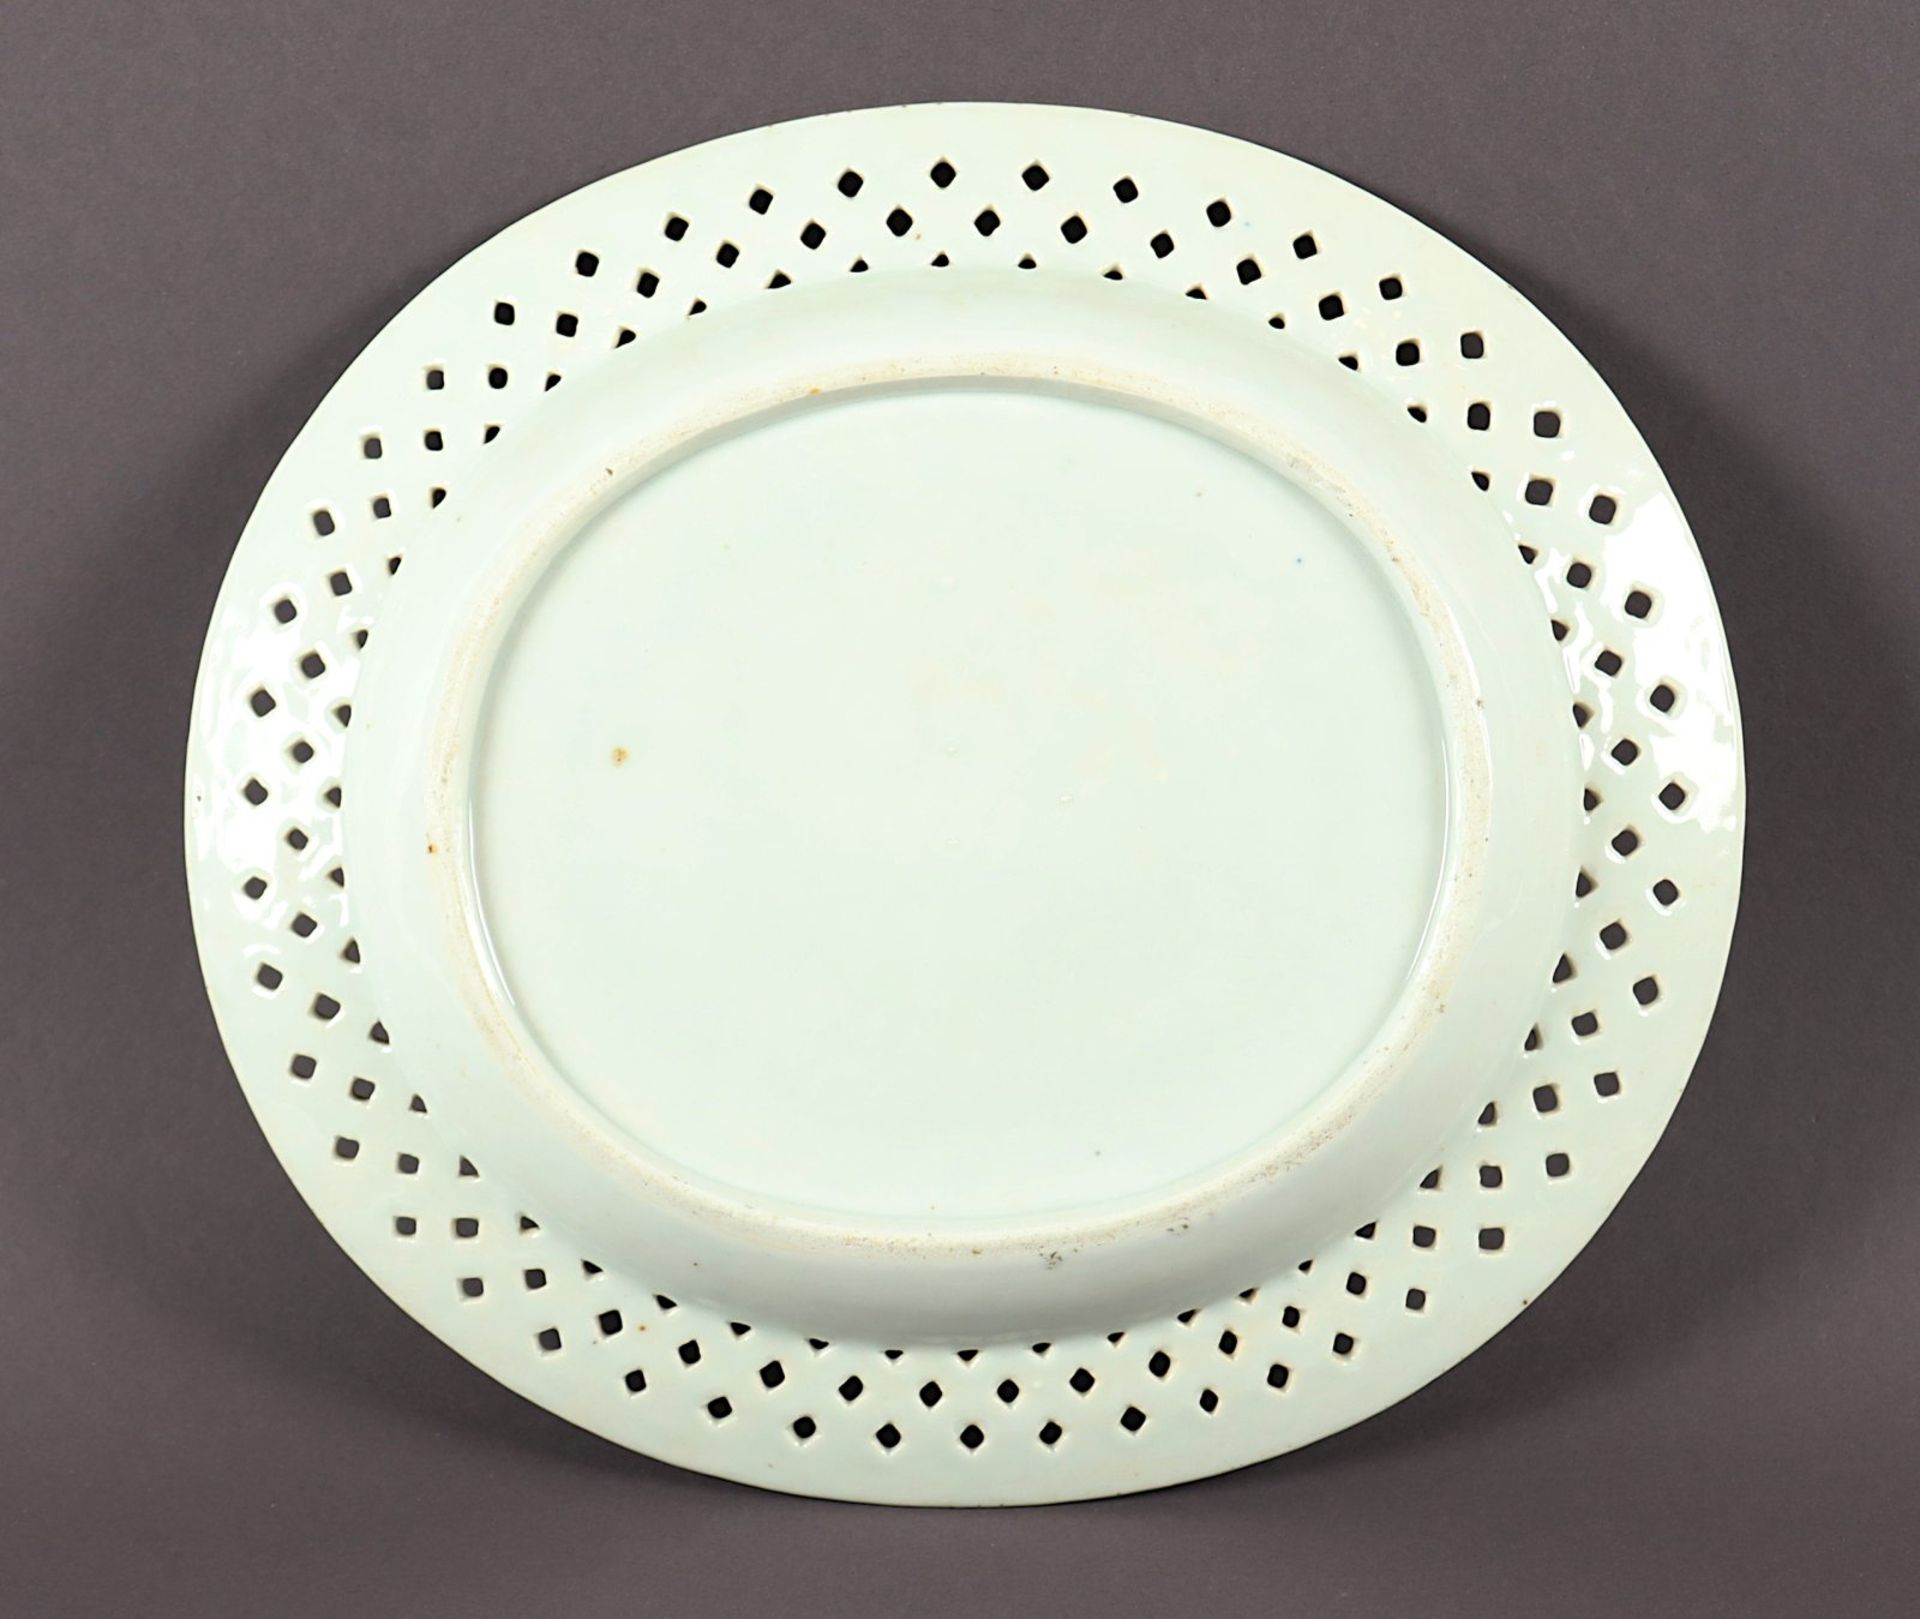 ovale Platte mit Durchbruchrand, Porzellan, China, um 1800 - Bild 2 aus 2